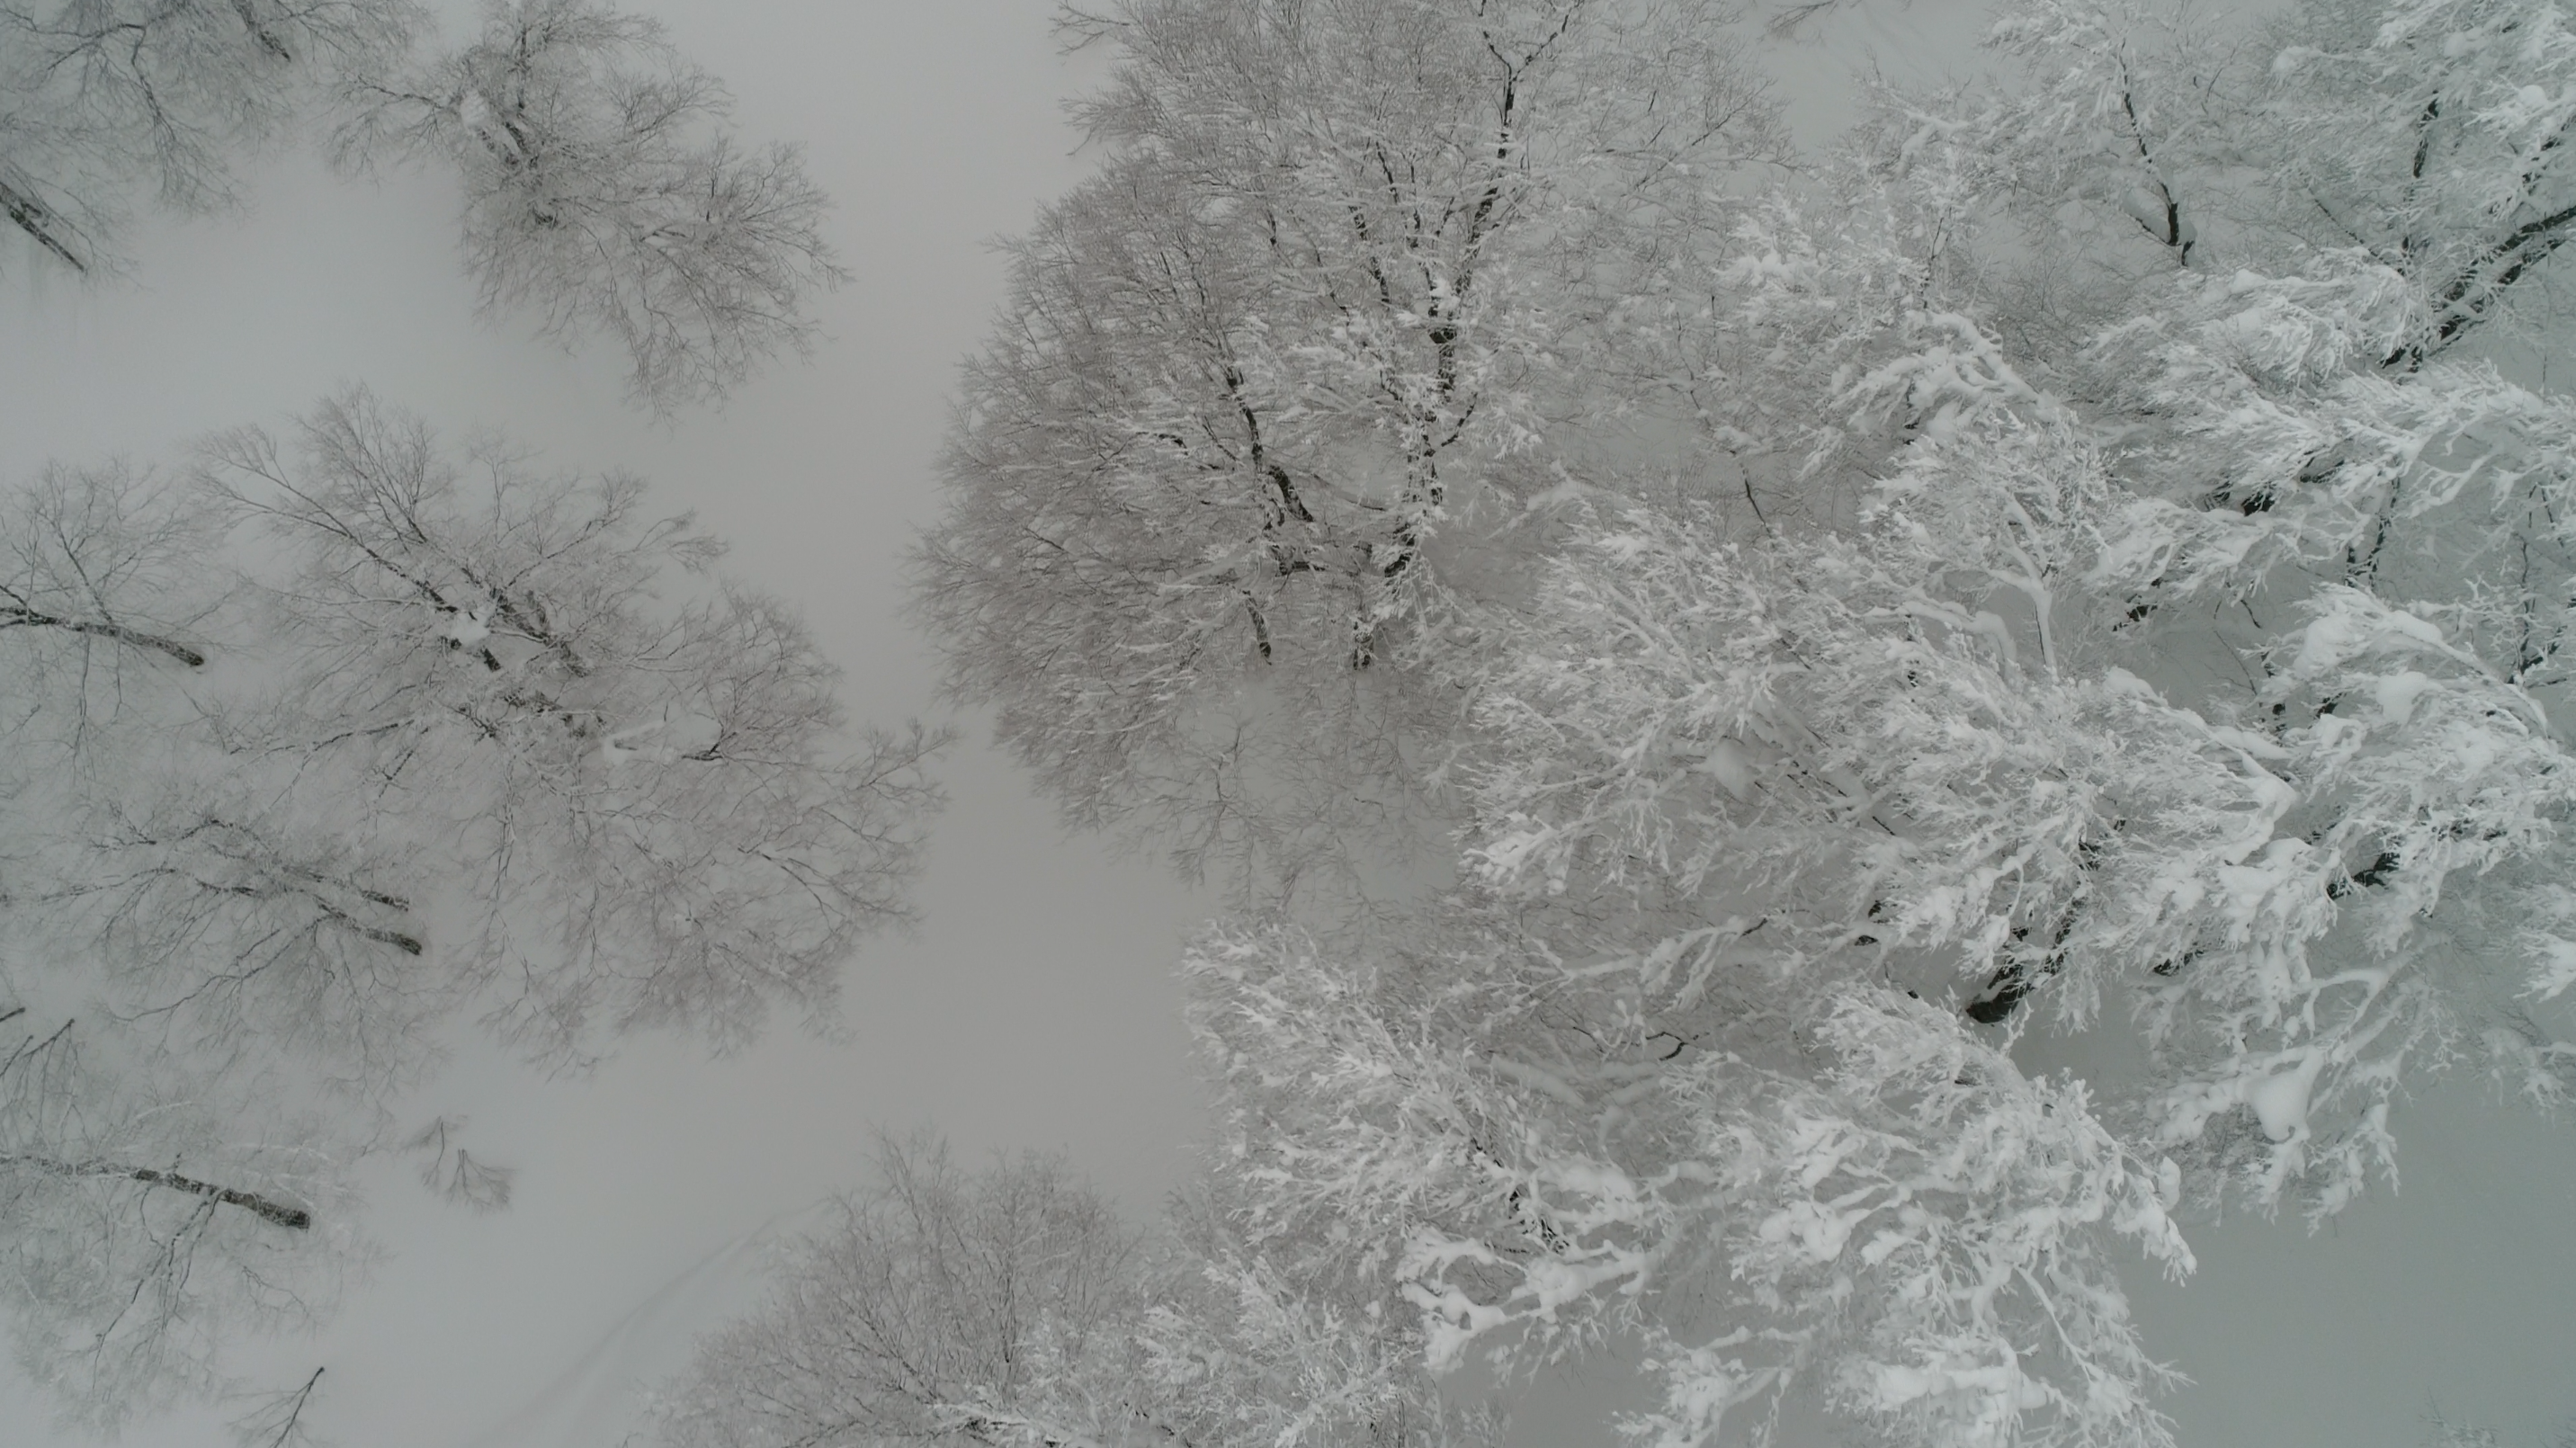 Snowy tree canopy in Cortina, Hakuba